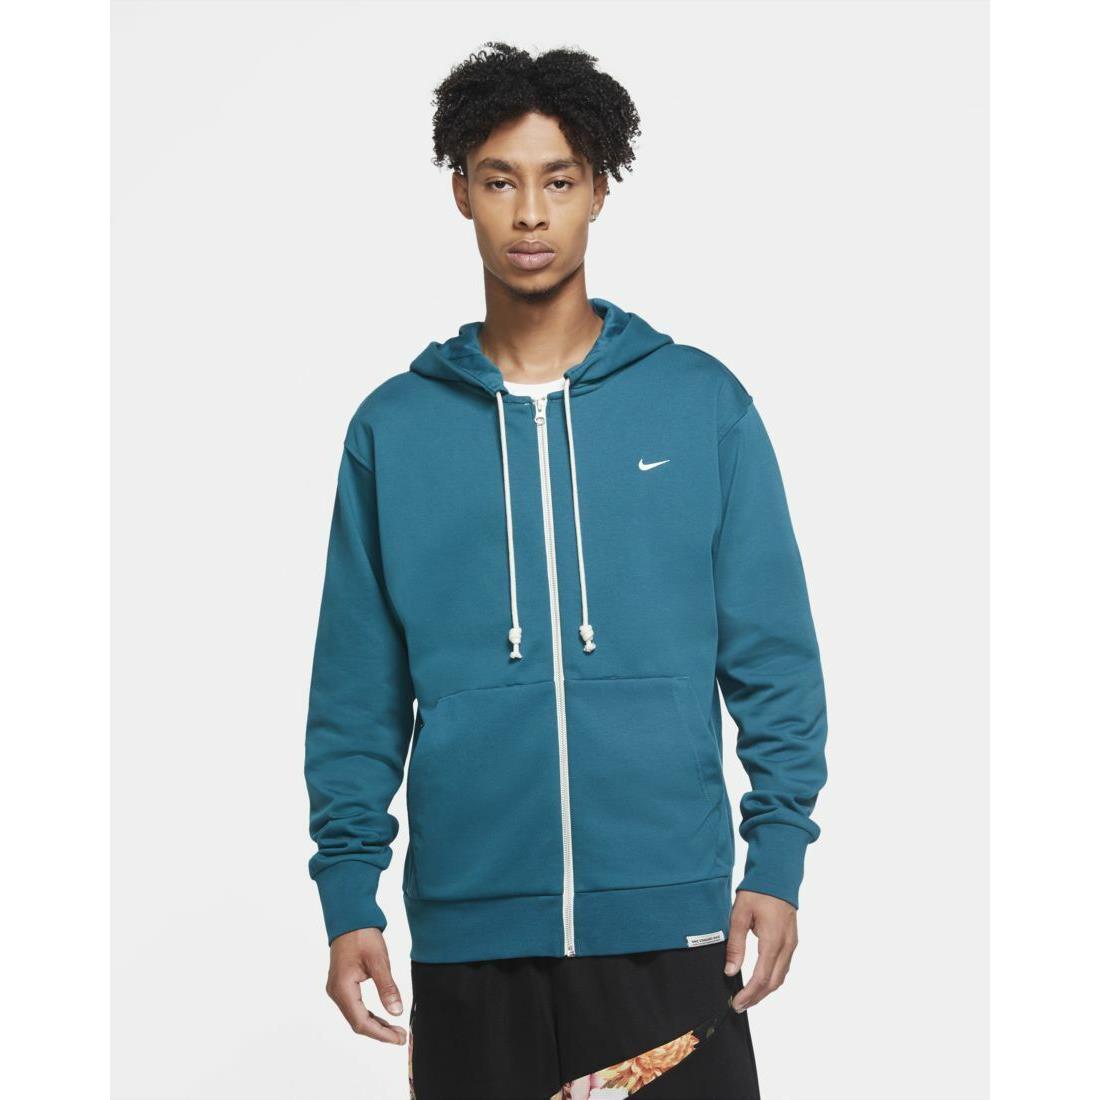 Nike Standard Issue Full Zip Basketball Hoodie Sweatshirt Jacket Teal Size XL